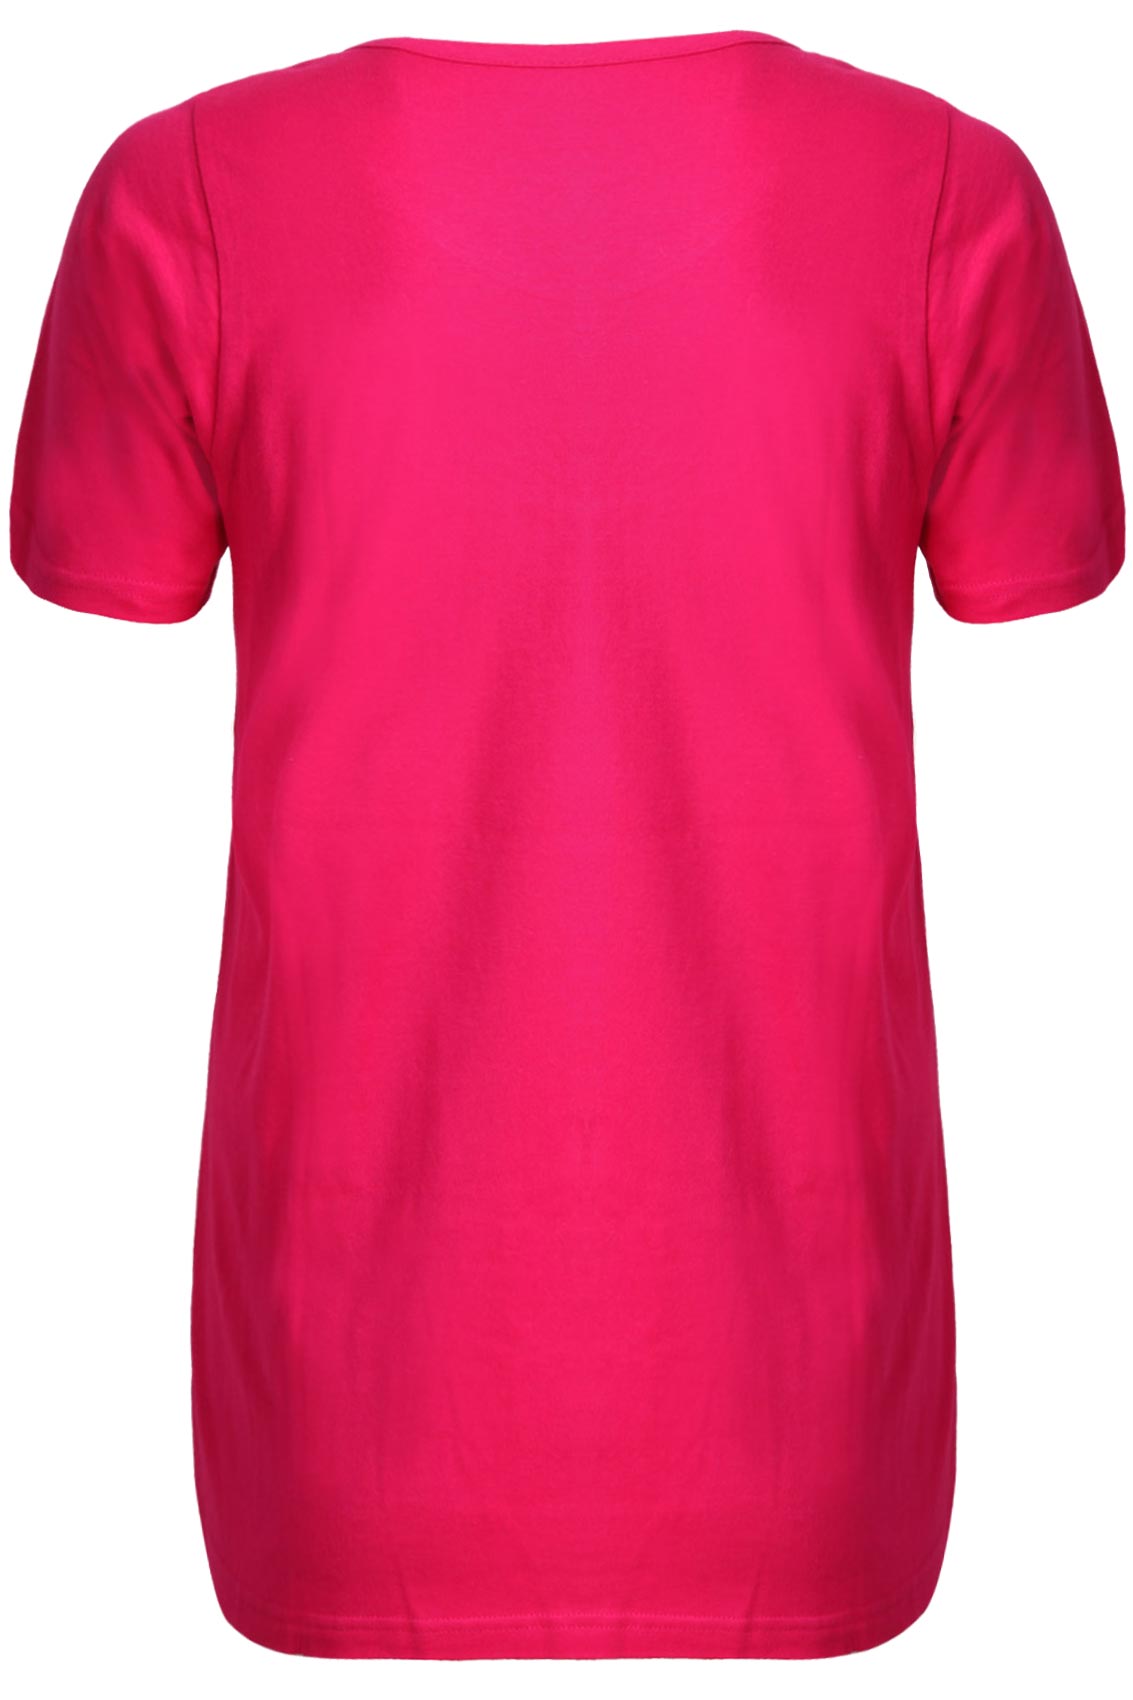 Magenta Short Sleeve Scoop Neck Basic T Shirt Plus Size 16 18 20 22 24